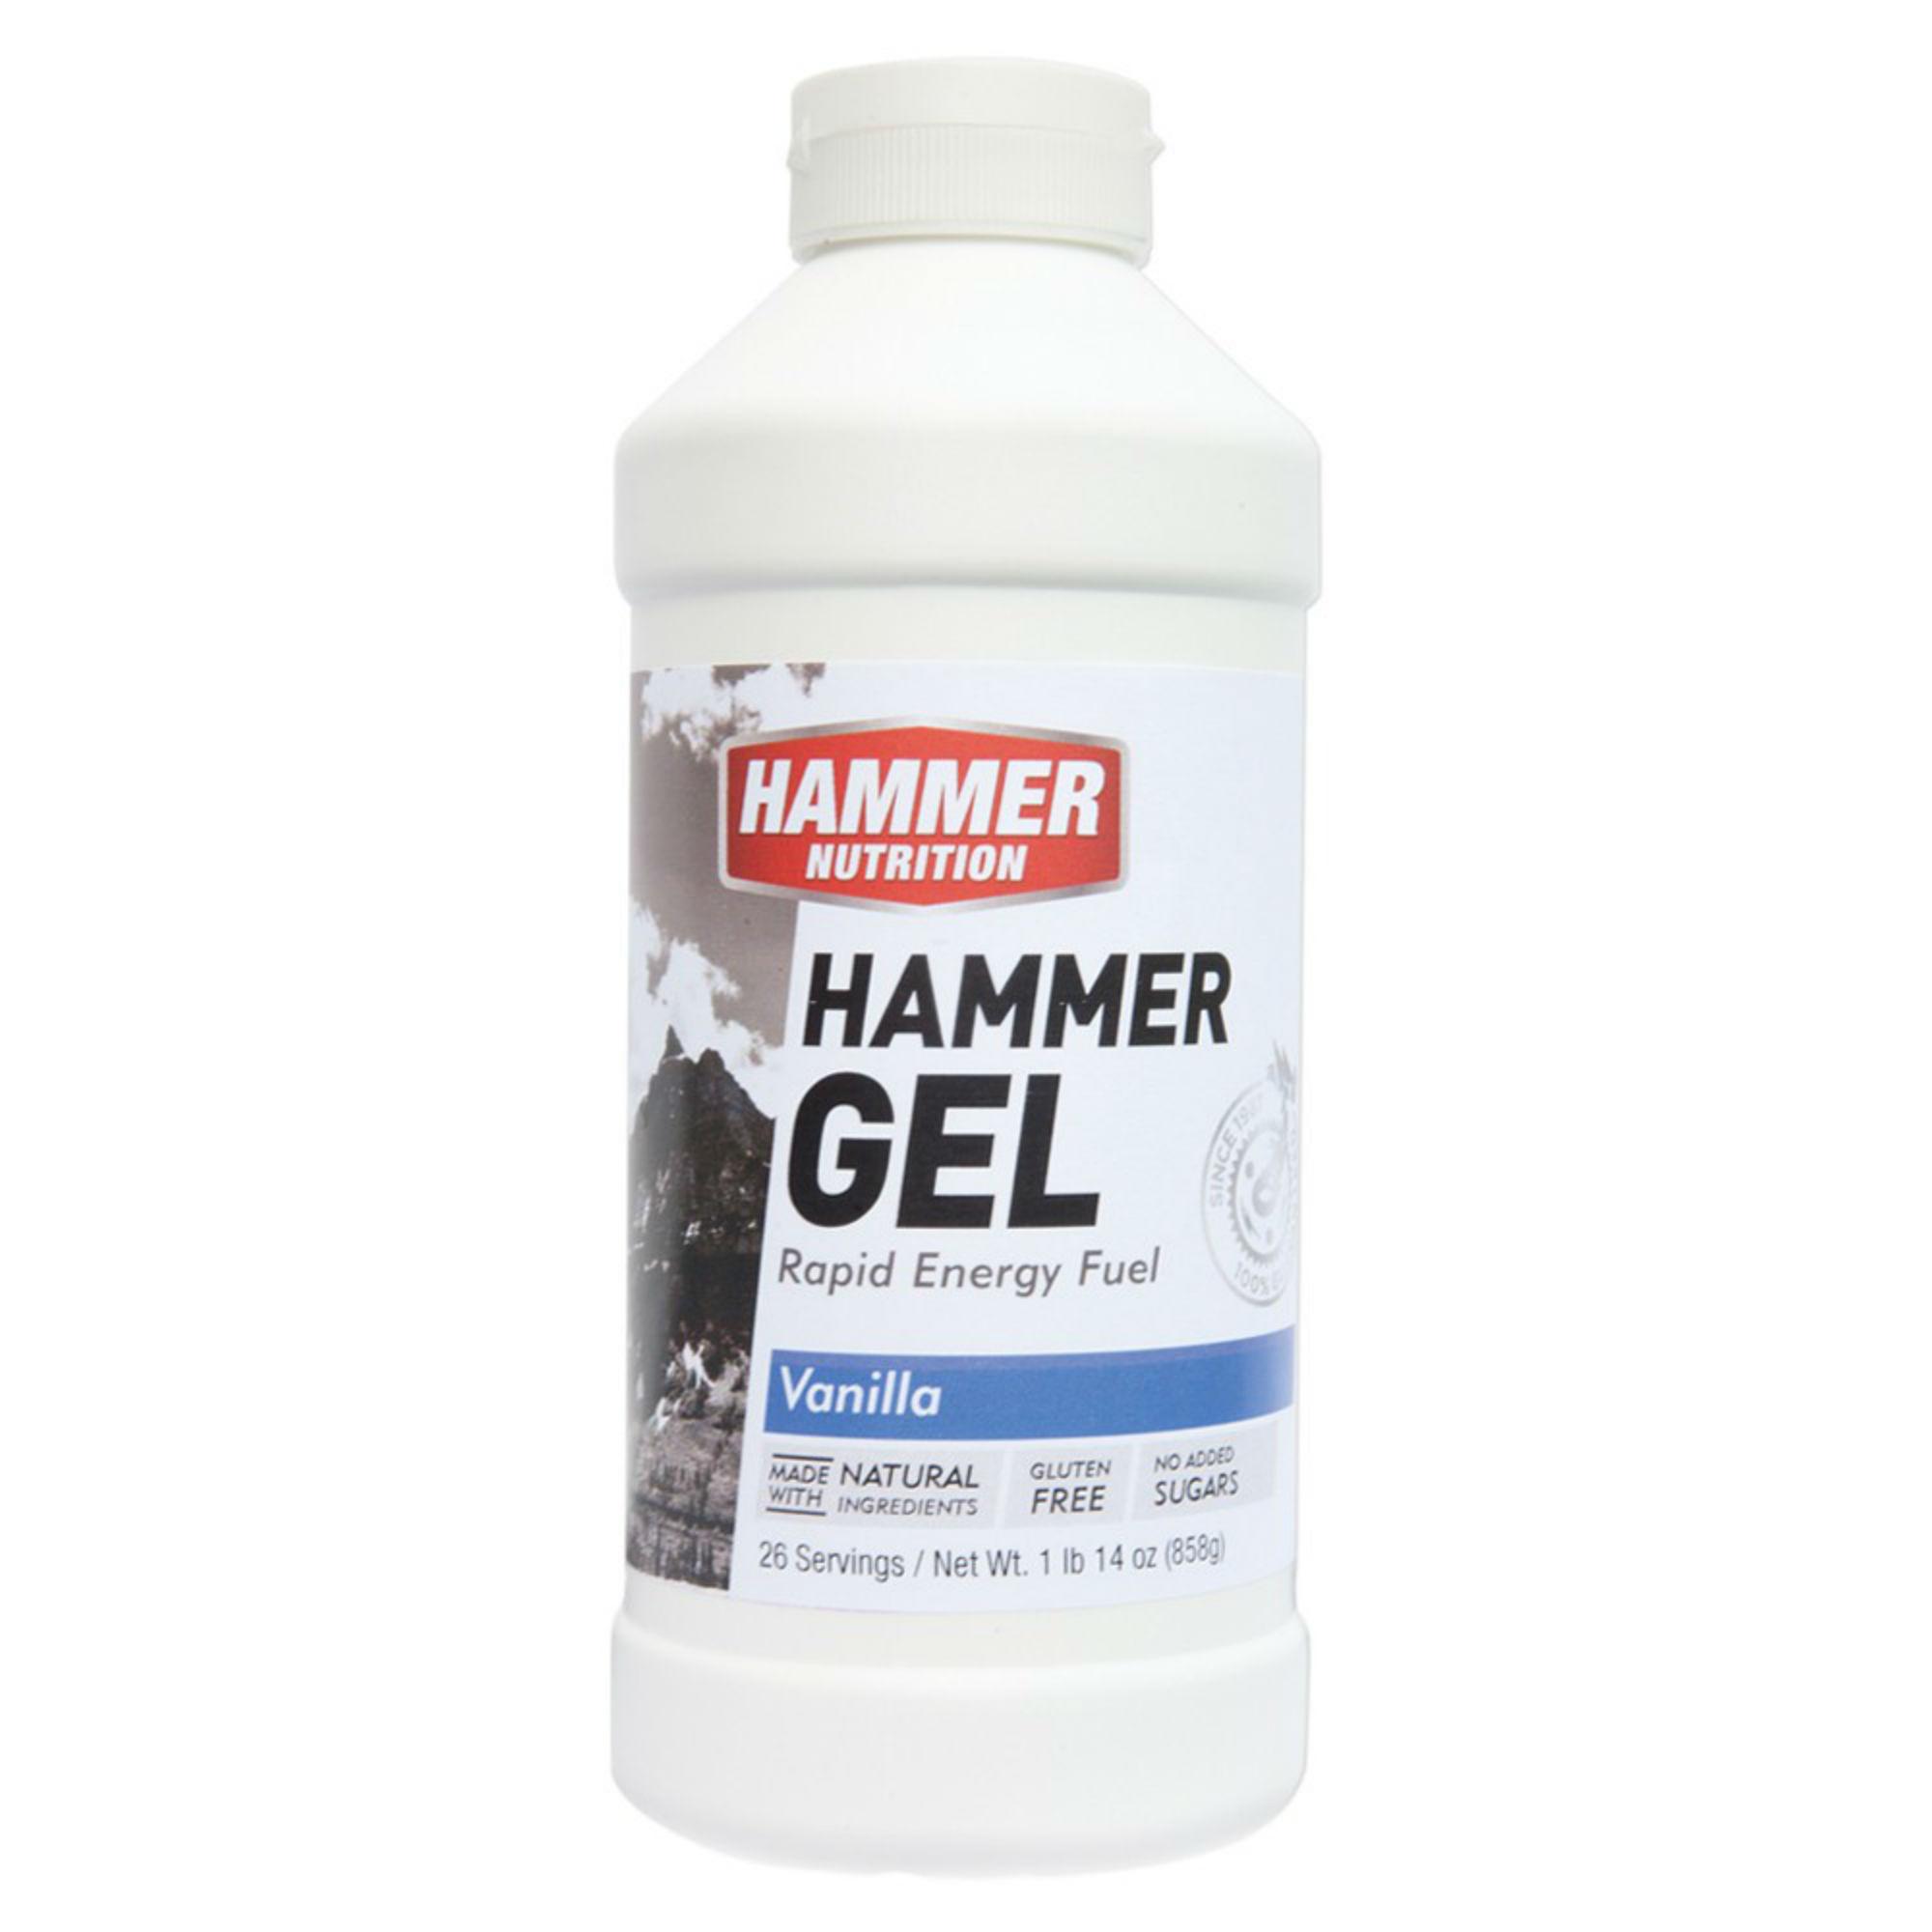  Hammer Nutrition Gel - 26 Servings